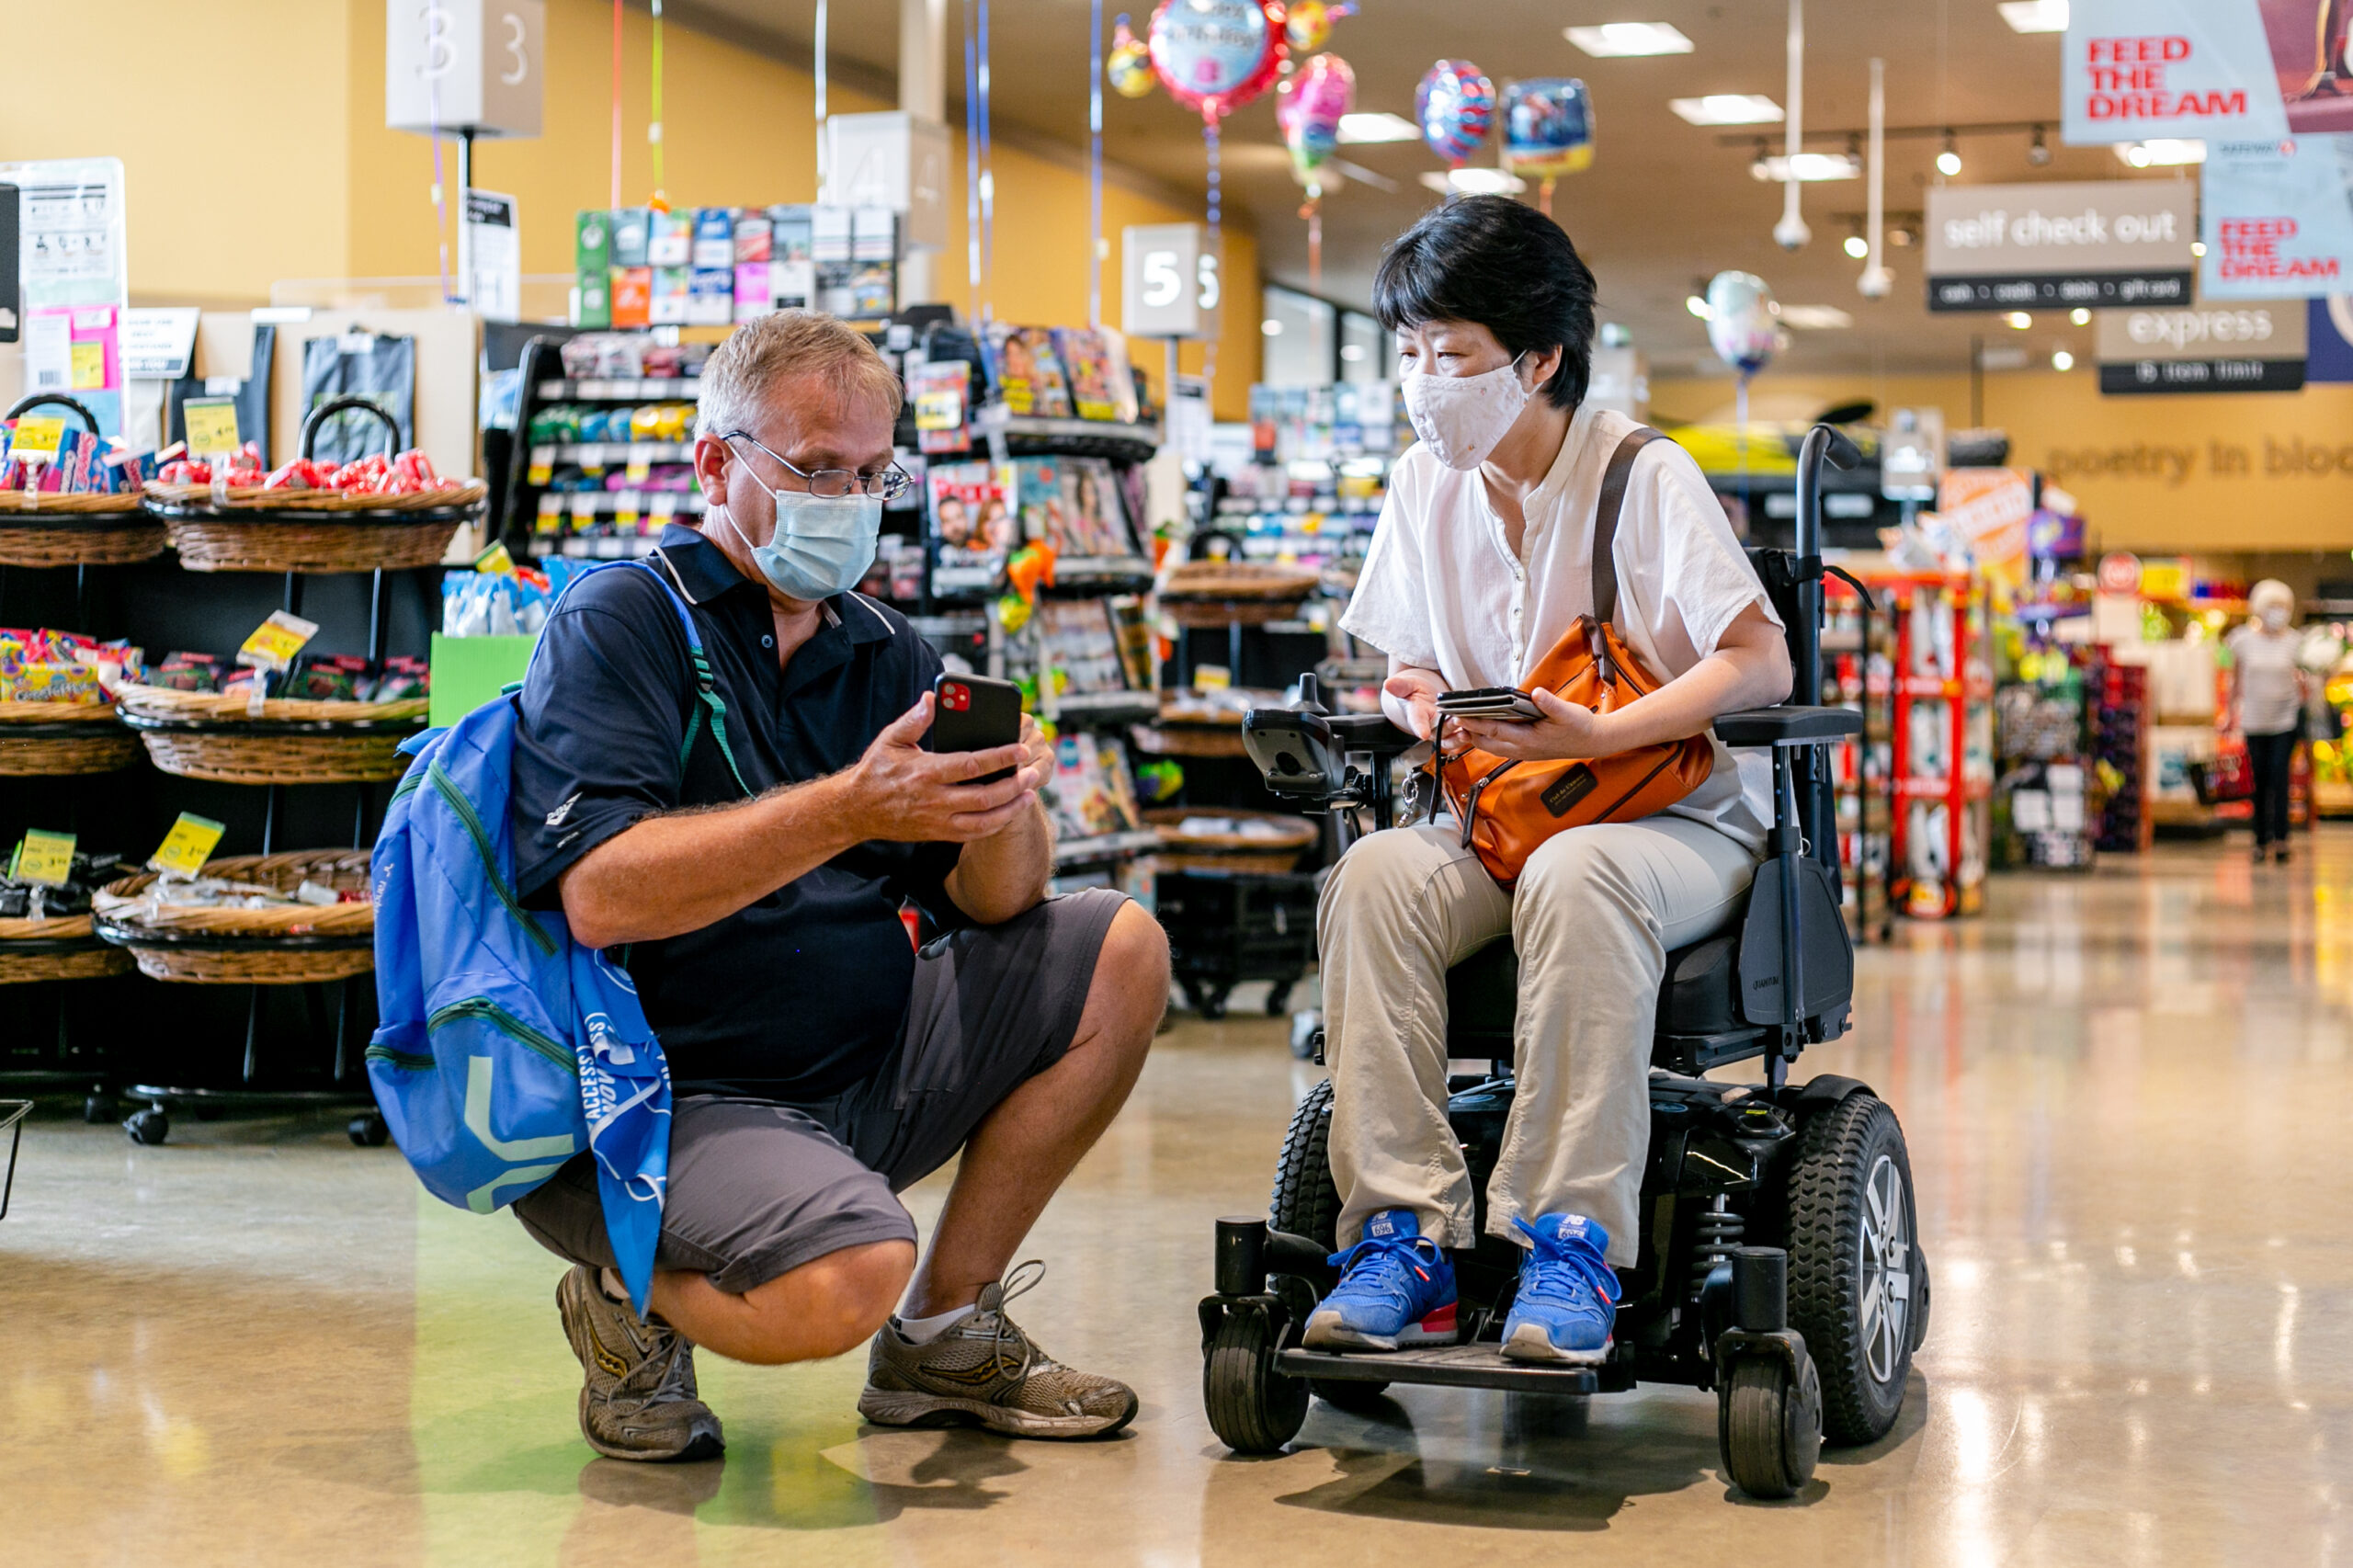 une femme asiatique en fauteuil roulant et un homme blanc regardent tous deux un téléphone portable à l'intérieur d'un magasin d'alimentation